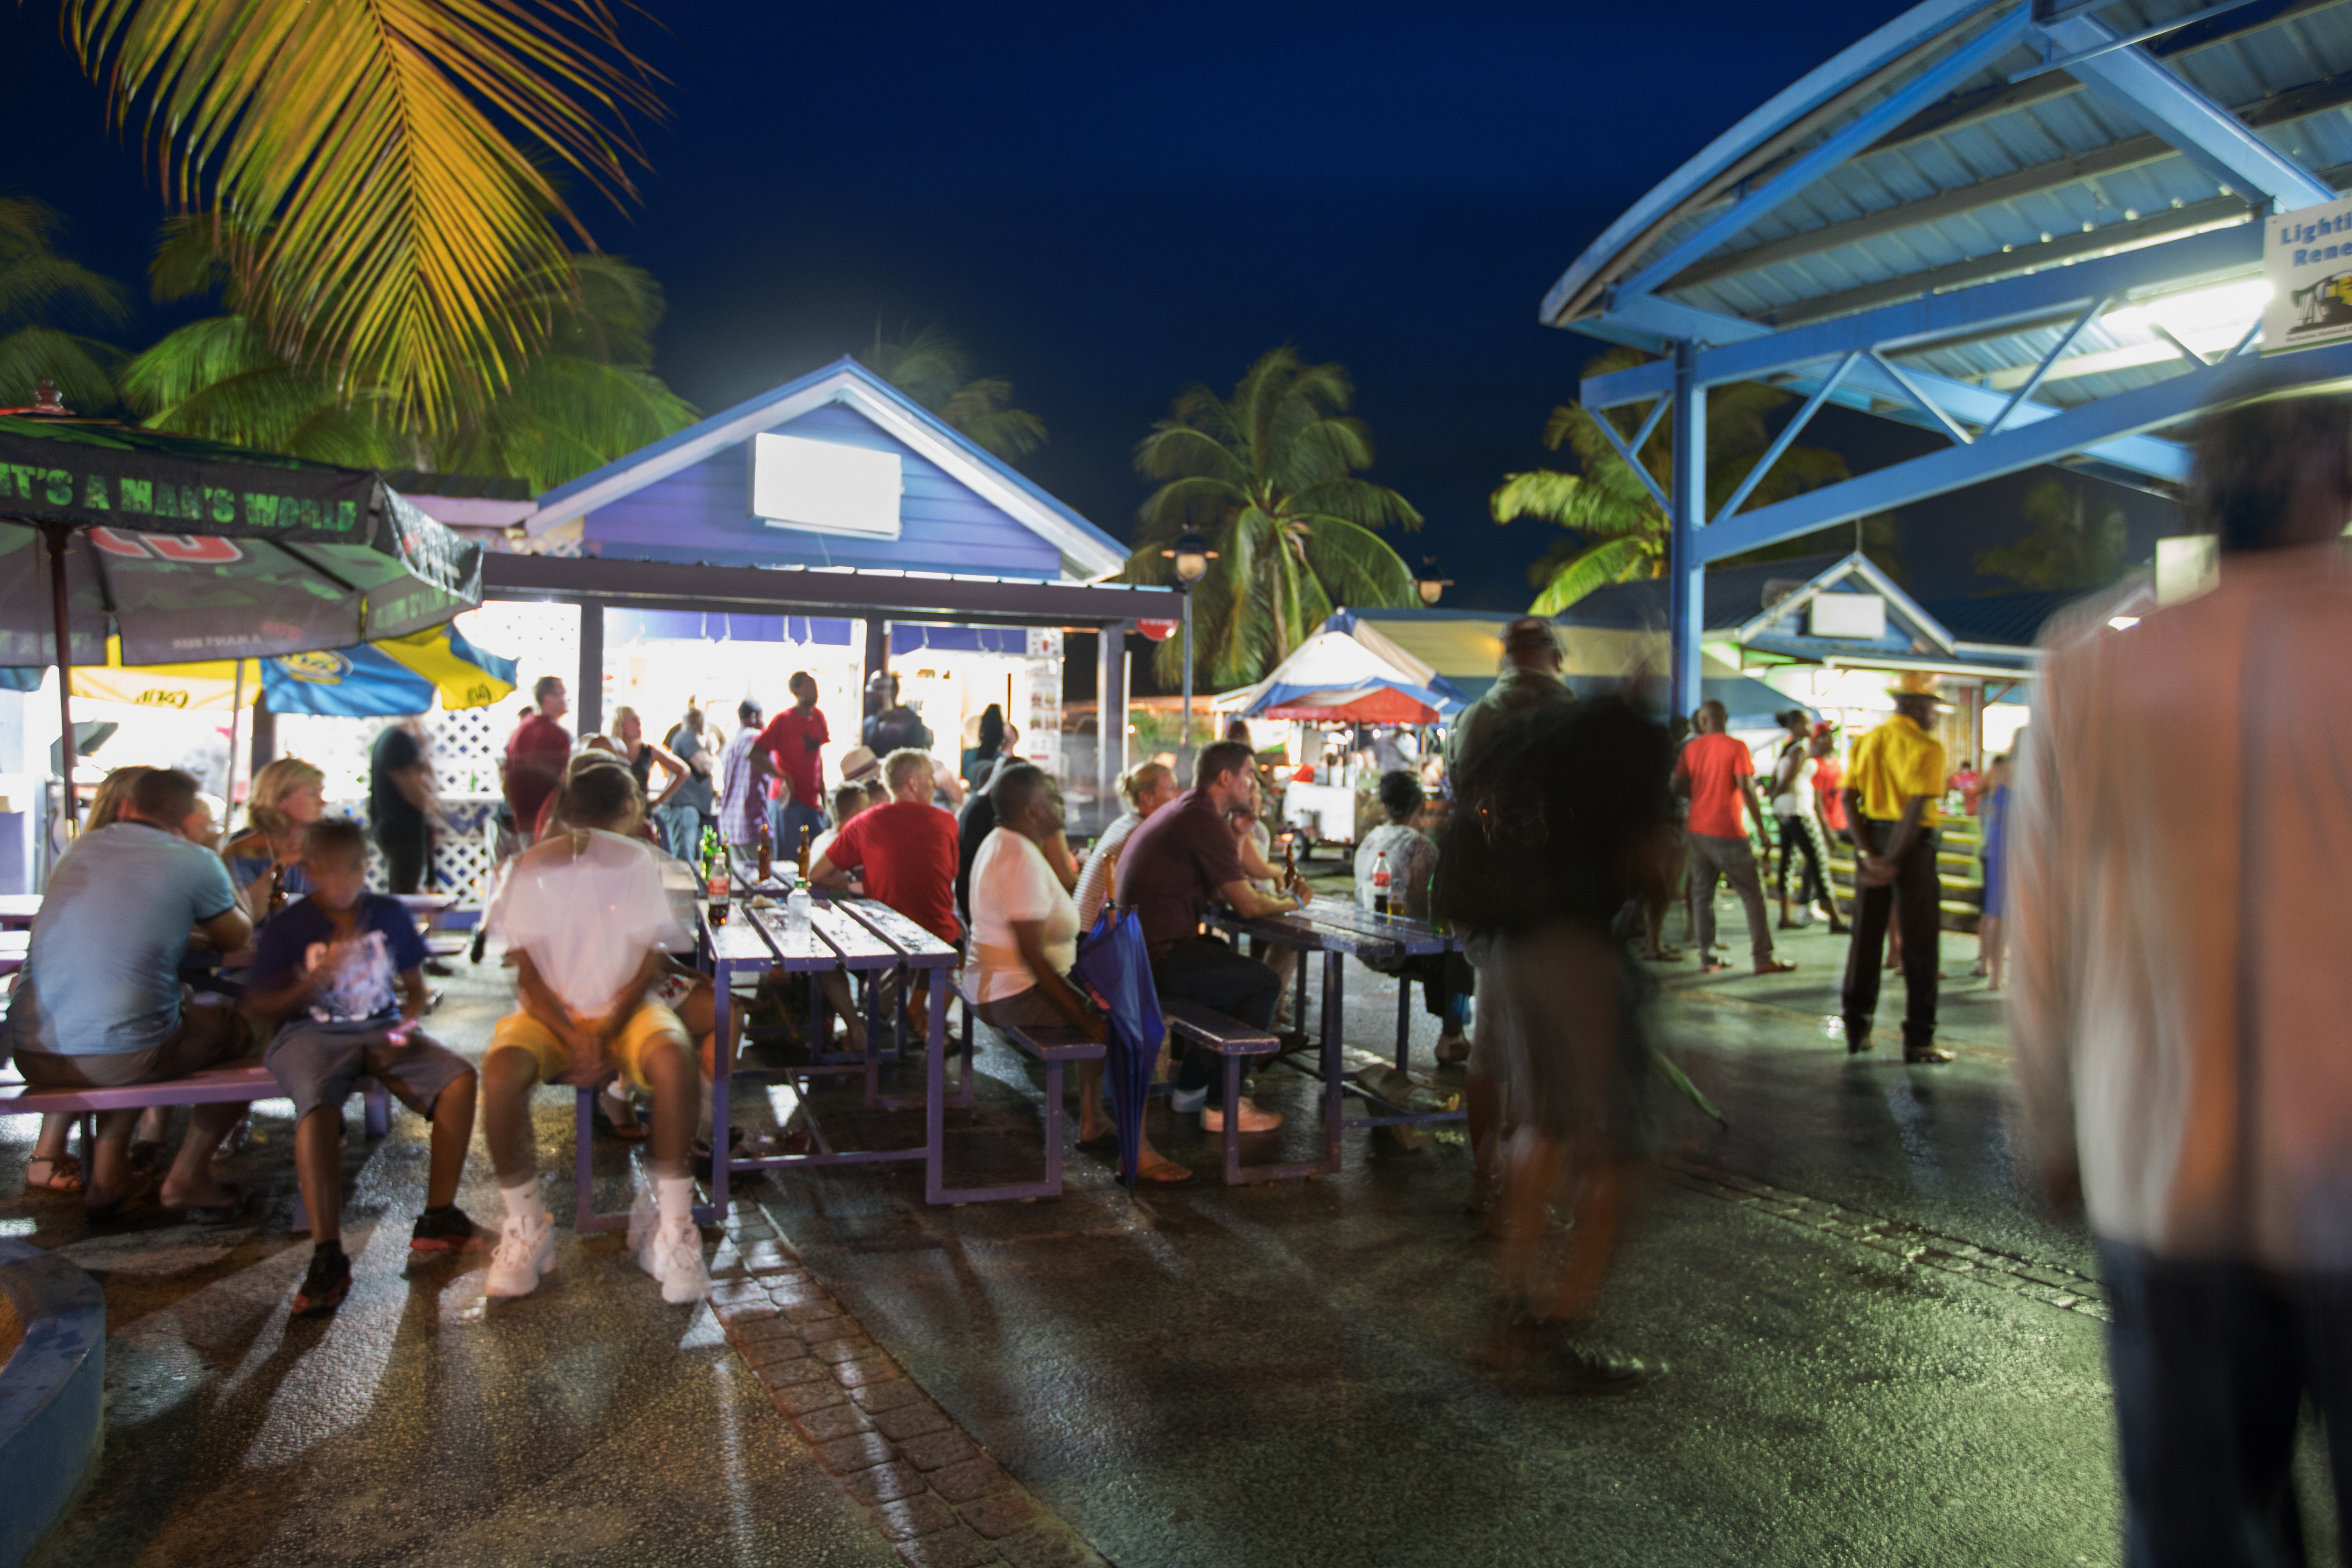 In Oistins findet jeden Freitag abend der Fish Fry statt, eine karibische Party, bei der sich Locals und Touristen treffen. Man kann viele leckere Fischgerichte probieren, karibische Musik hören und tanzen. Der Besuch lohnt sich.